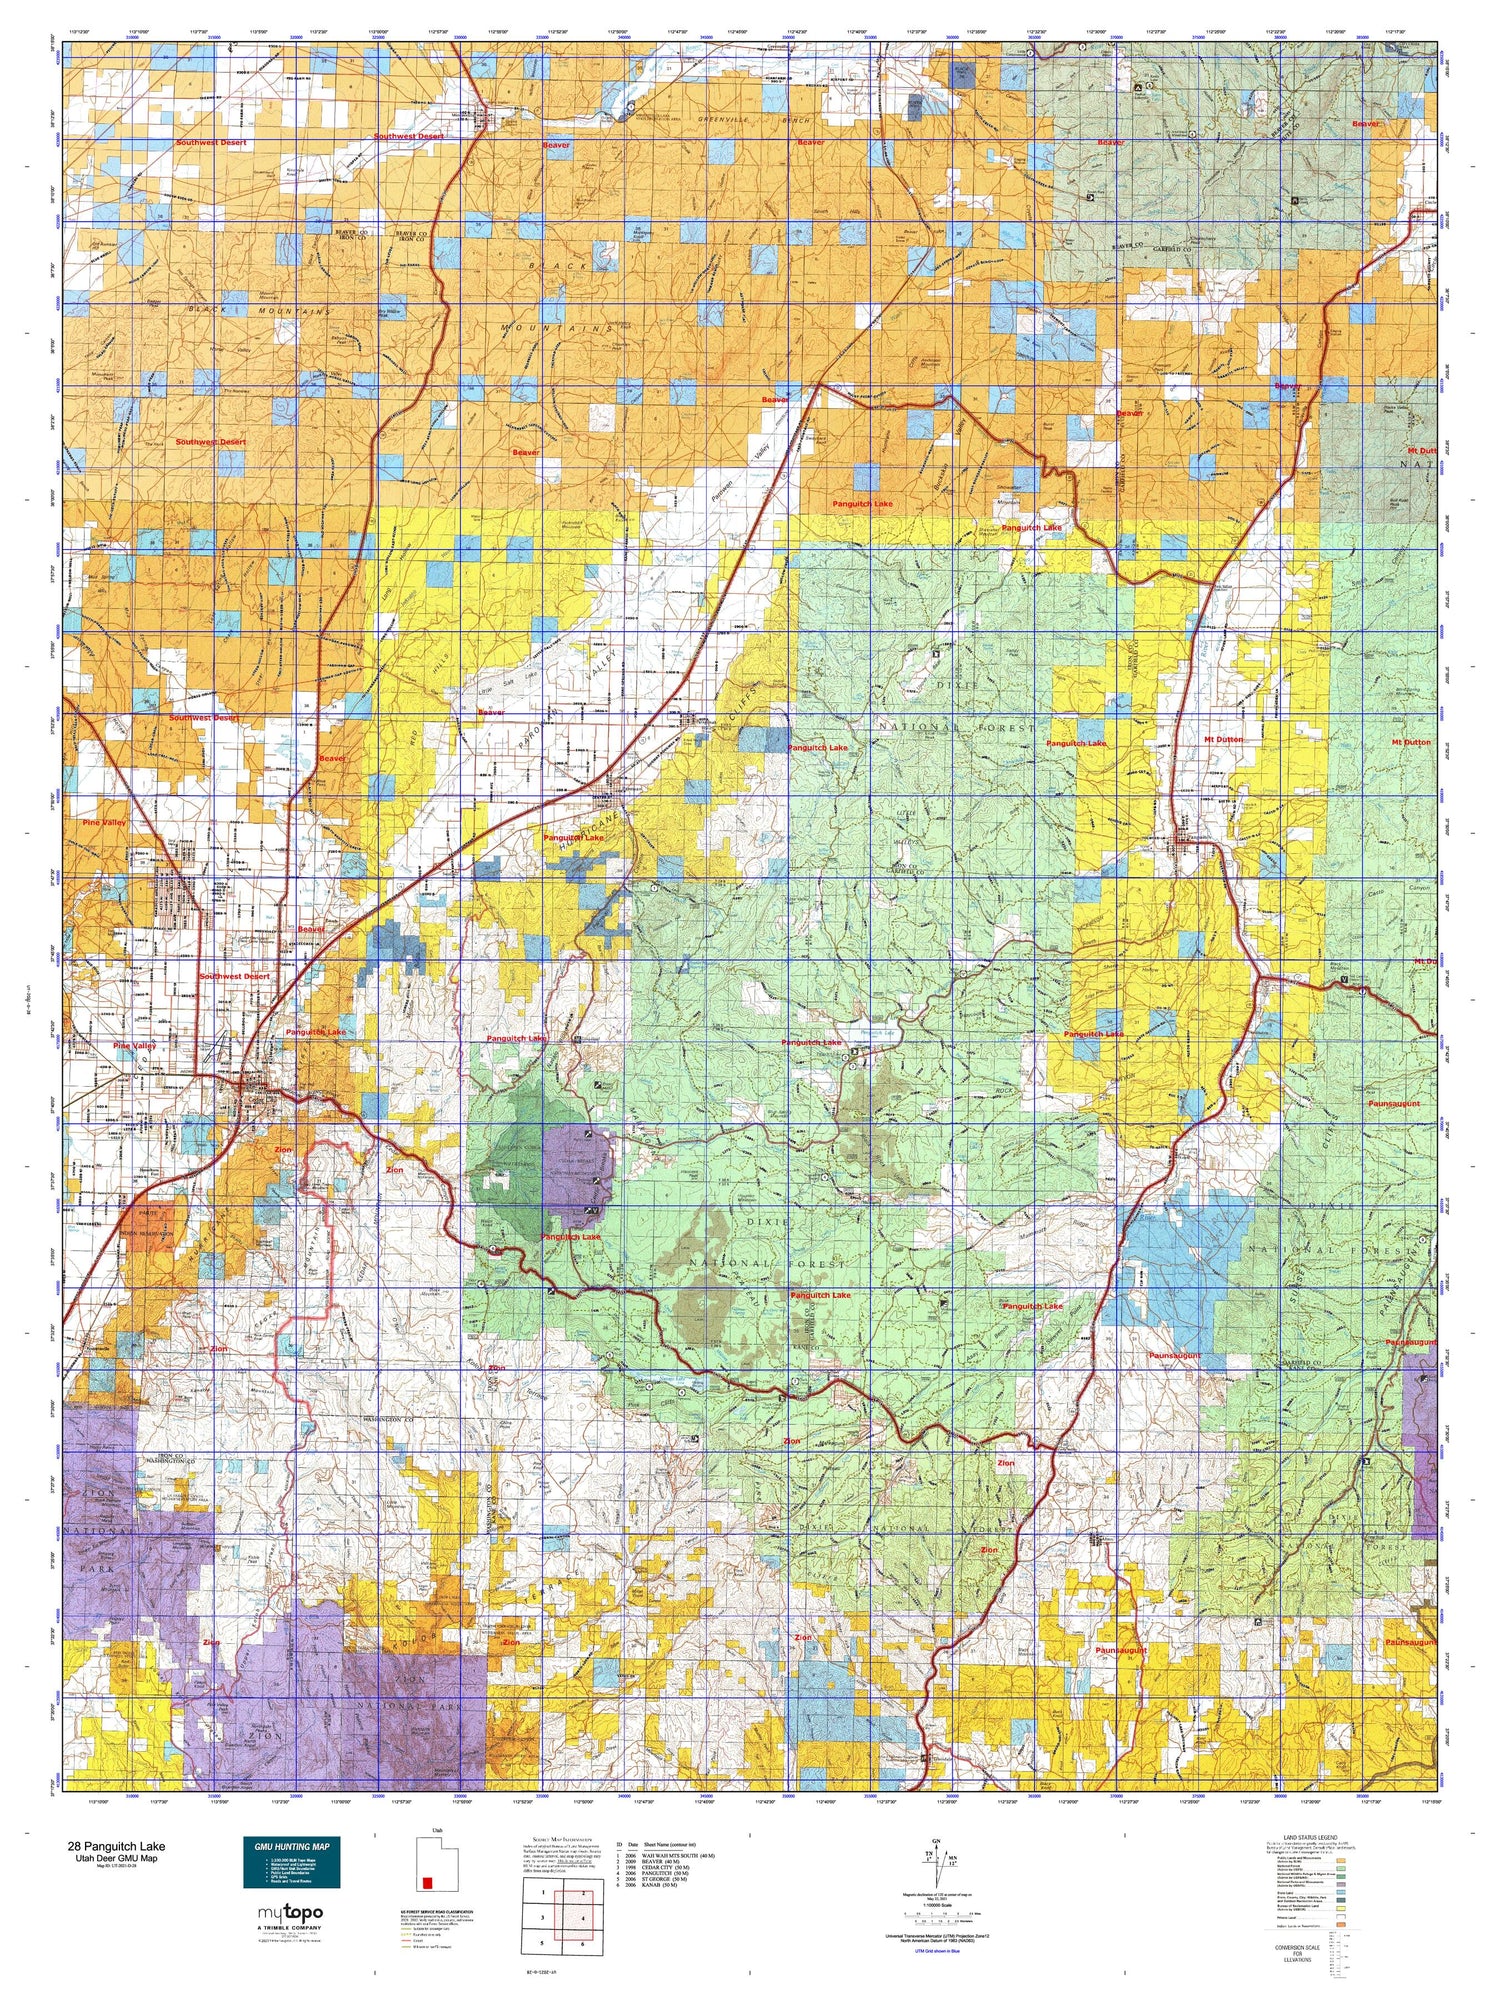 Utah Deer GMU 28 Panguitch Lake Map Image